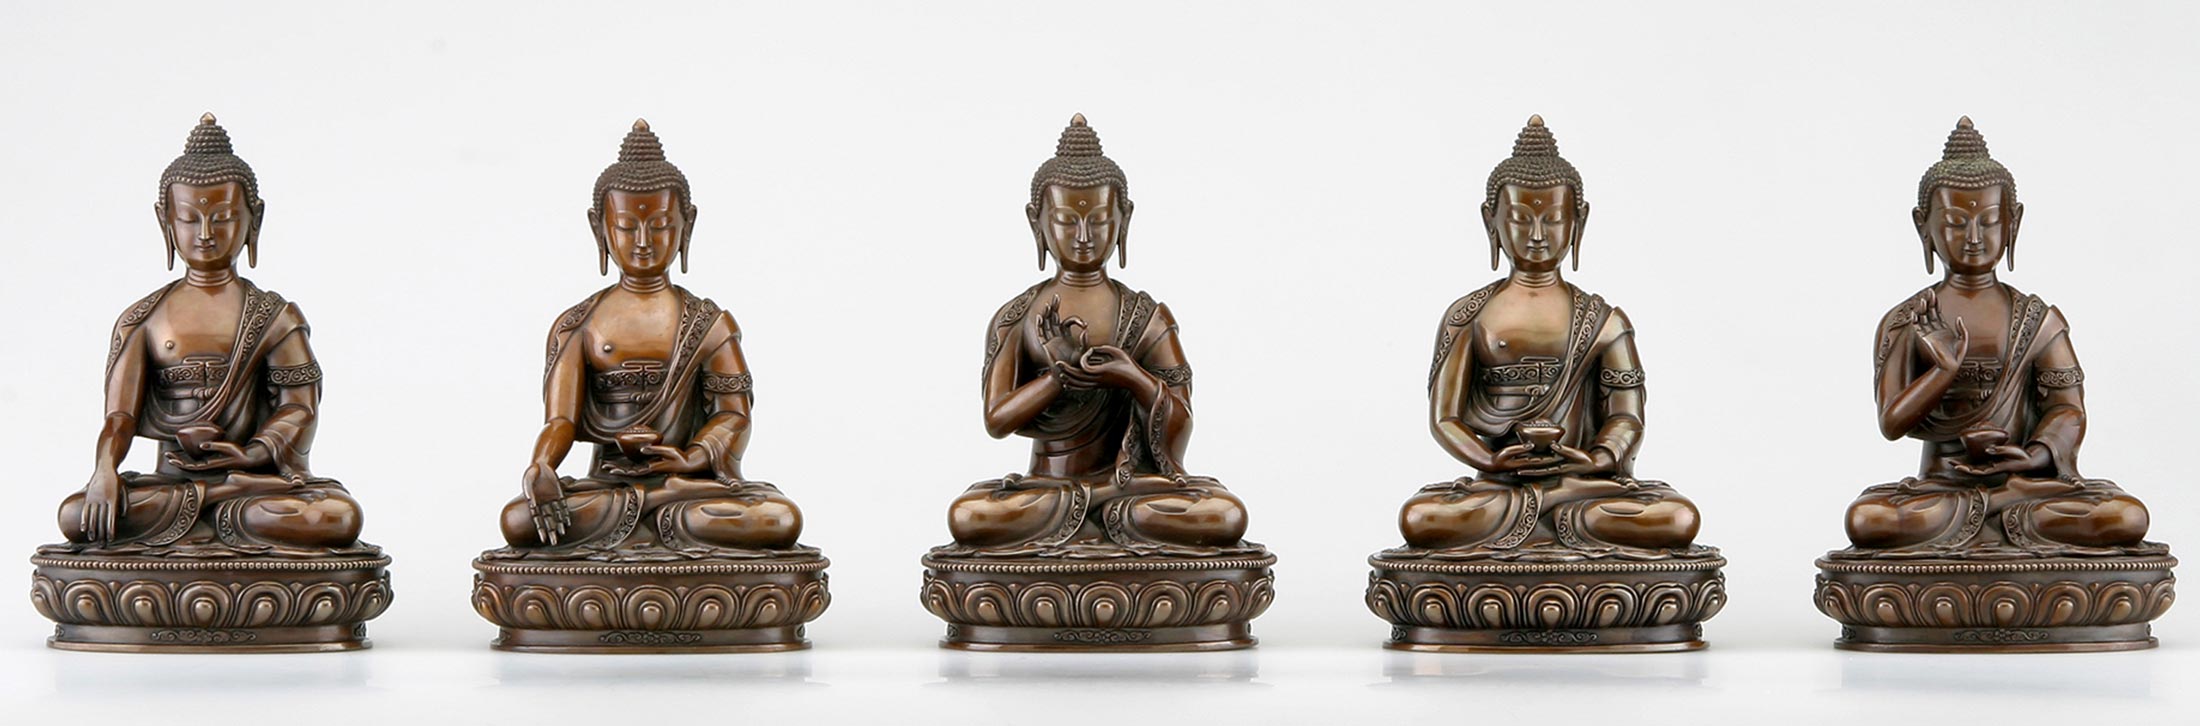 Buddhistischer Verlag Buddhas